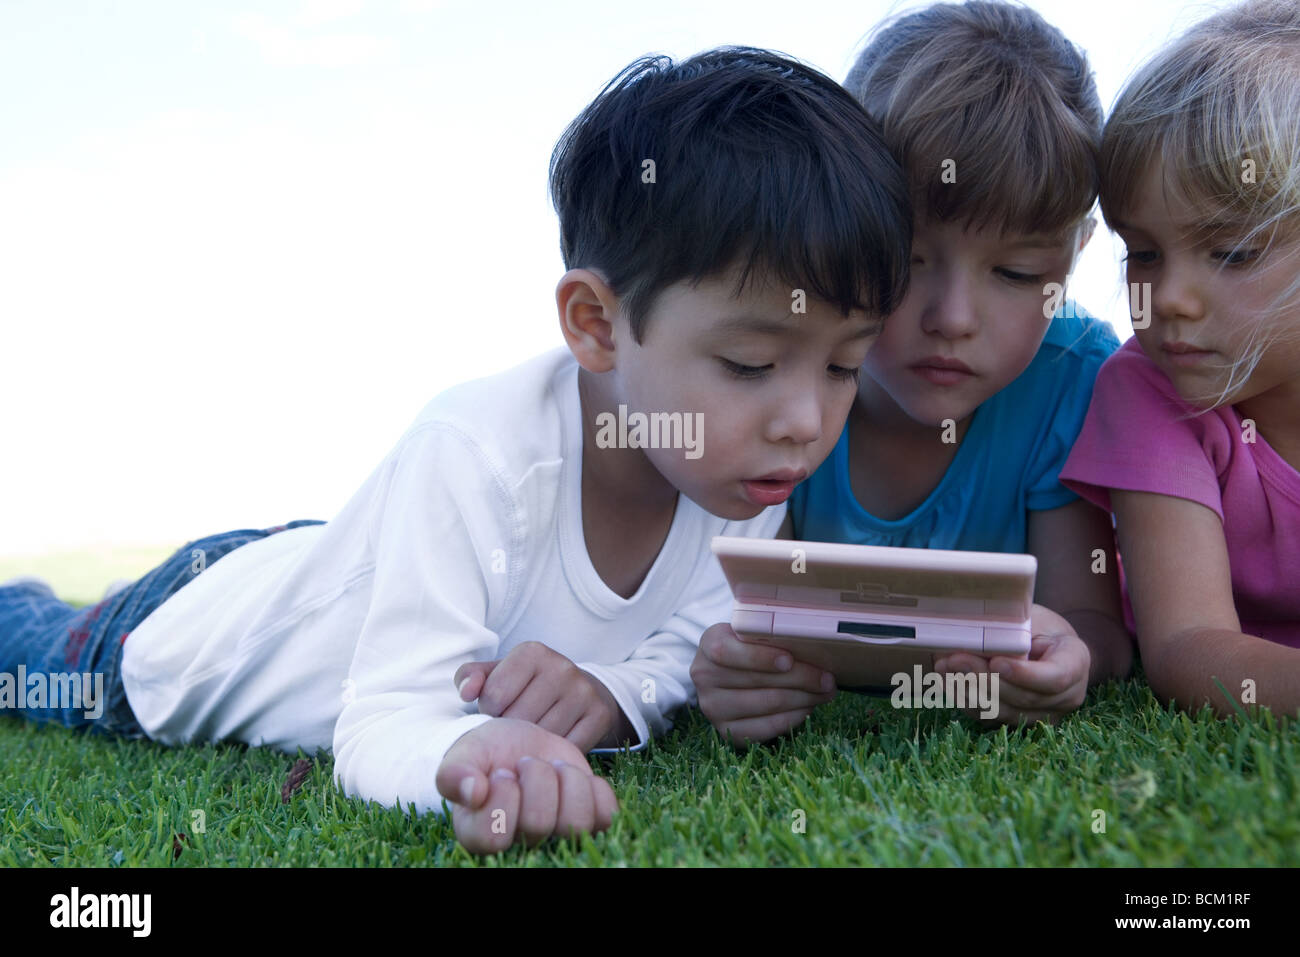 Drei Kinder auf dem Rasen liegen, spielen mit video Spiel, Nahaufnahme Stockfoto